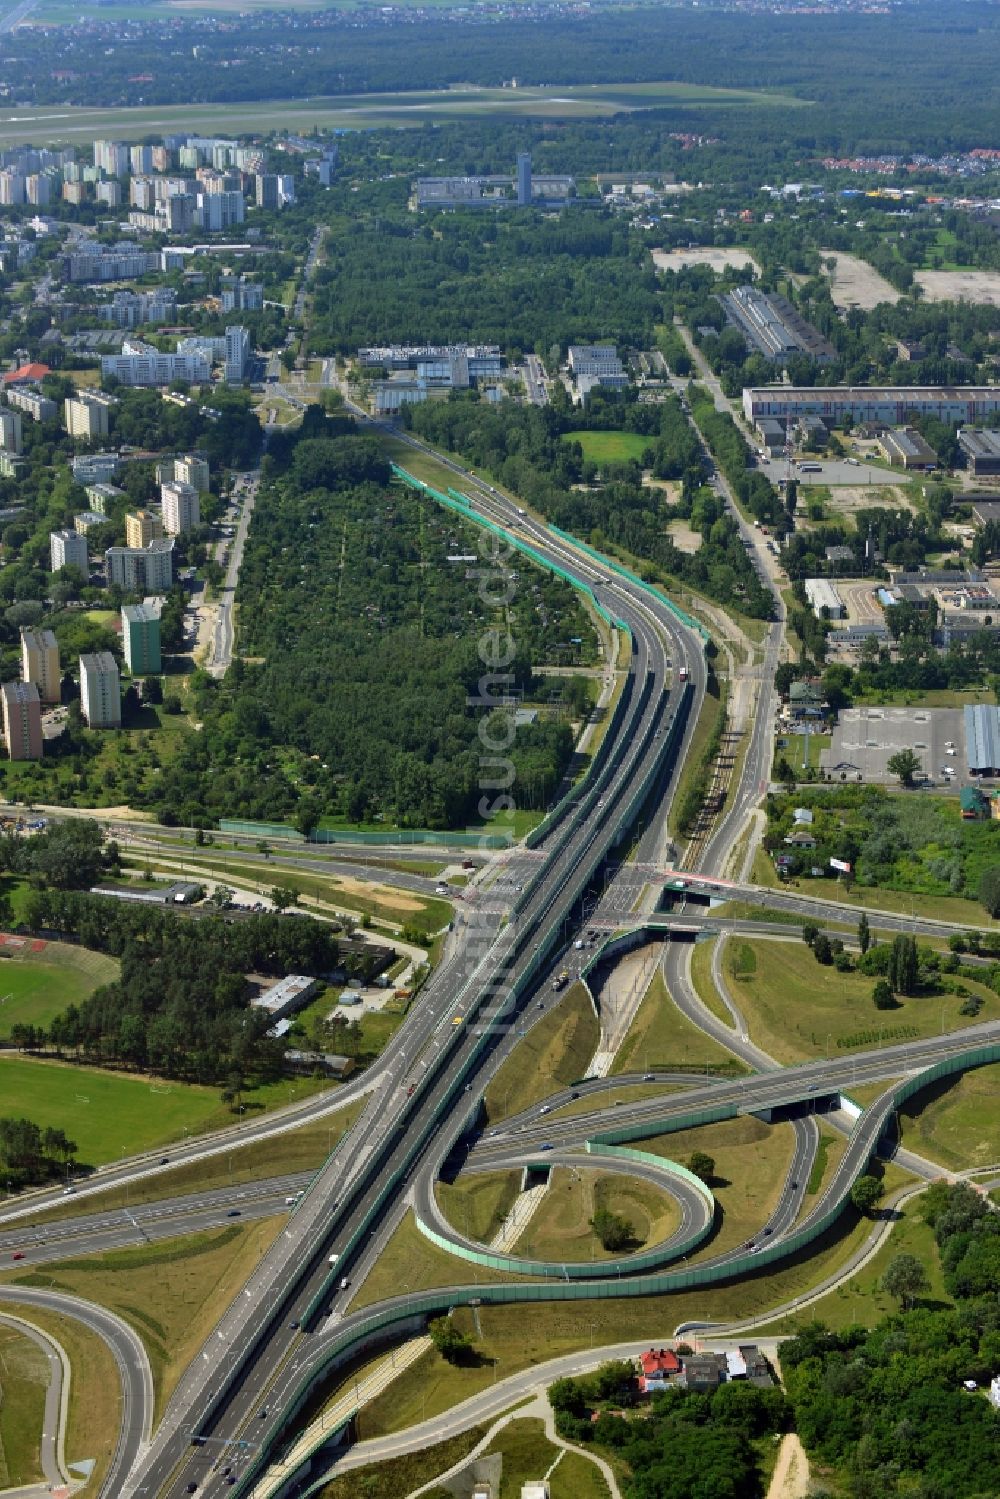 Warschau aus der Vogelperspektive: Autobahnbrücke Maria Sklodowska-Curie in Warschau in der Woiwodschaft Masowien in Polen